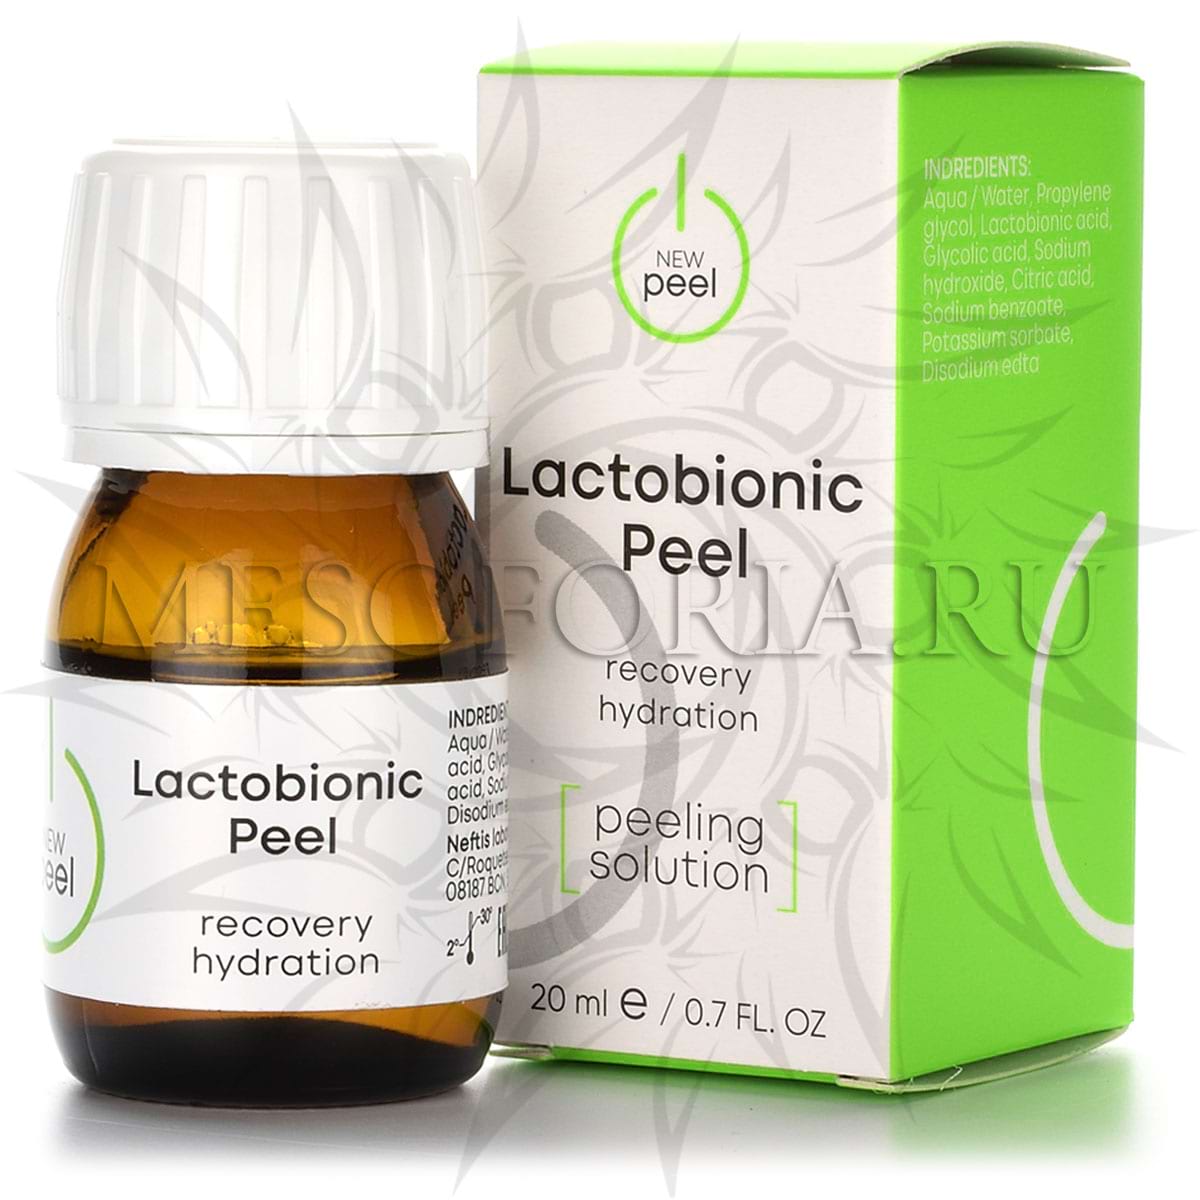 Лактобионовый пилинг / Lactobionic Peel, New Peel (Нью Пил) – 20 мл